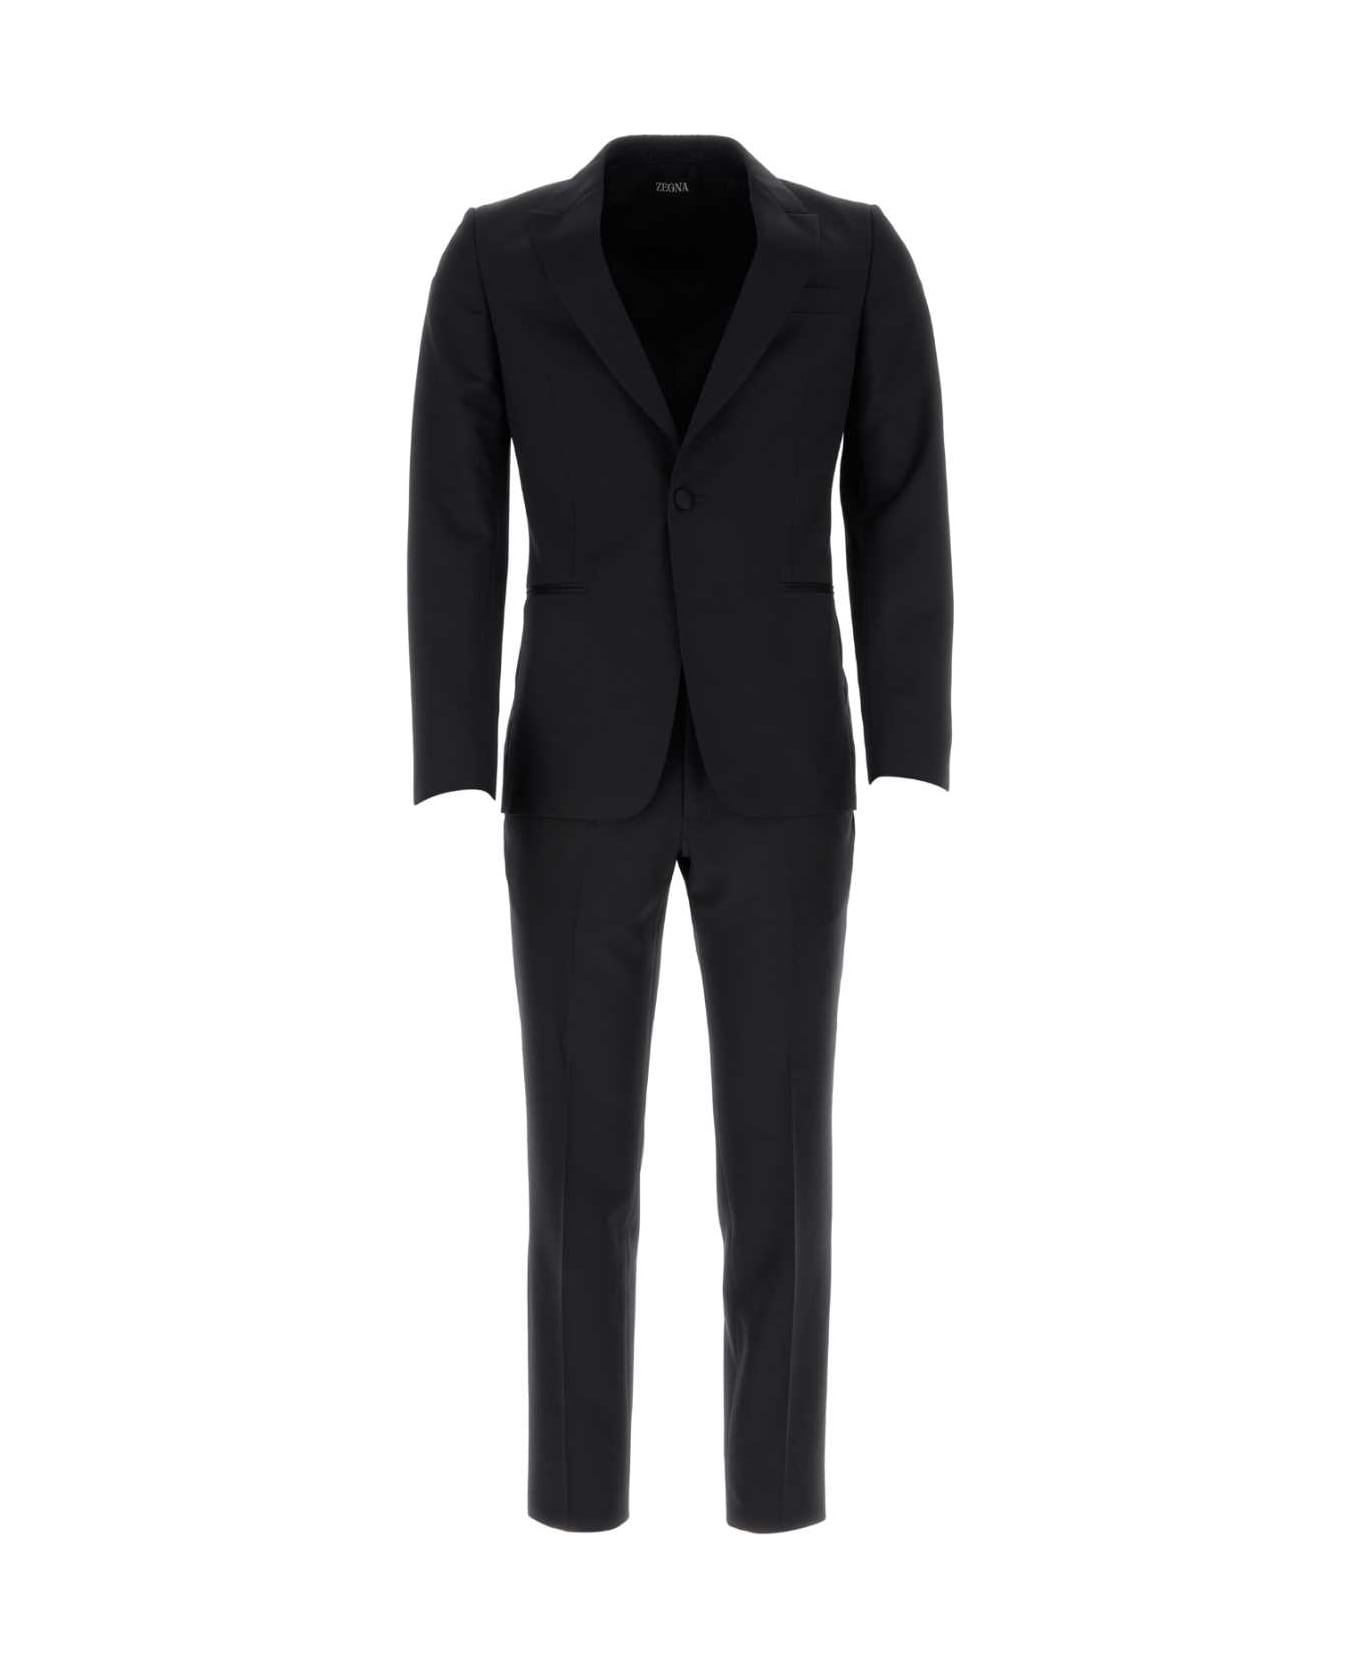 Zegna Black Wool Blend Suit - 8R